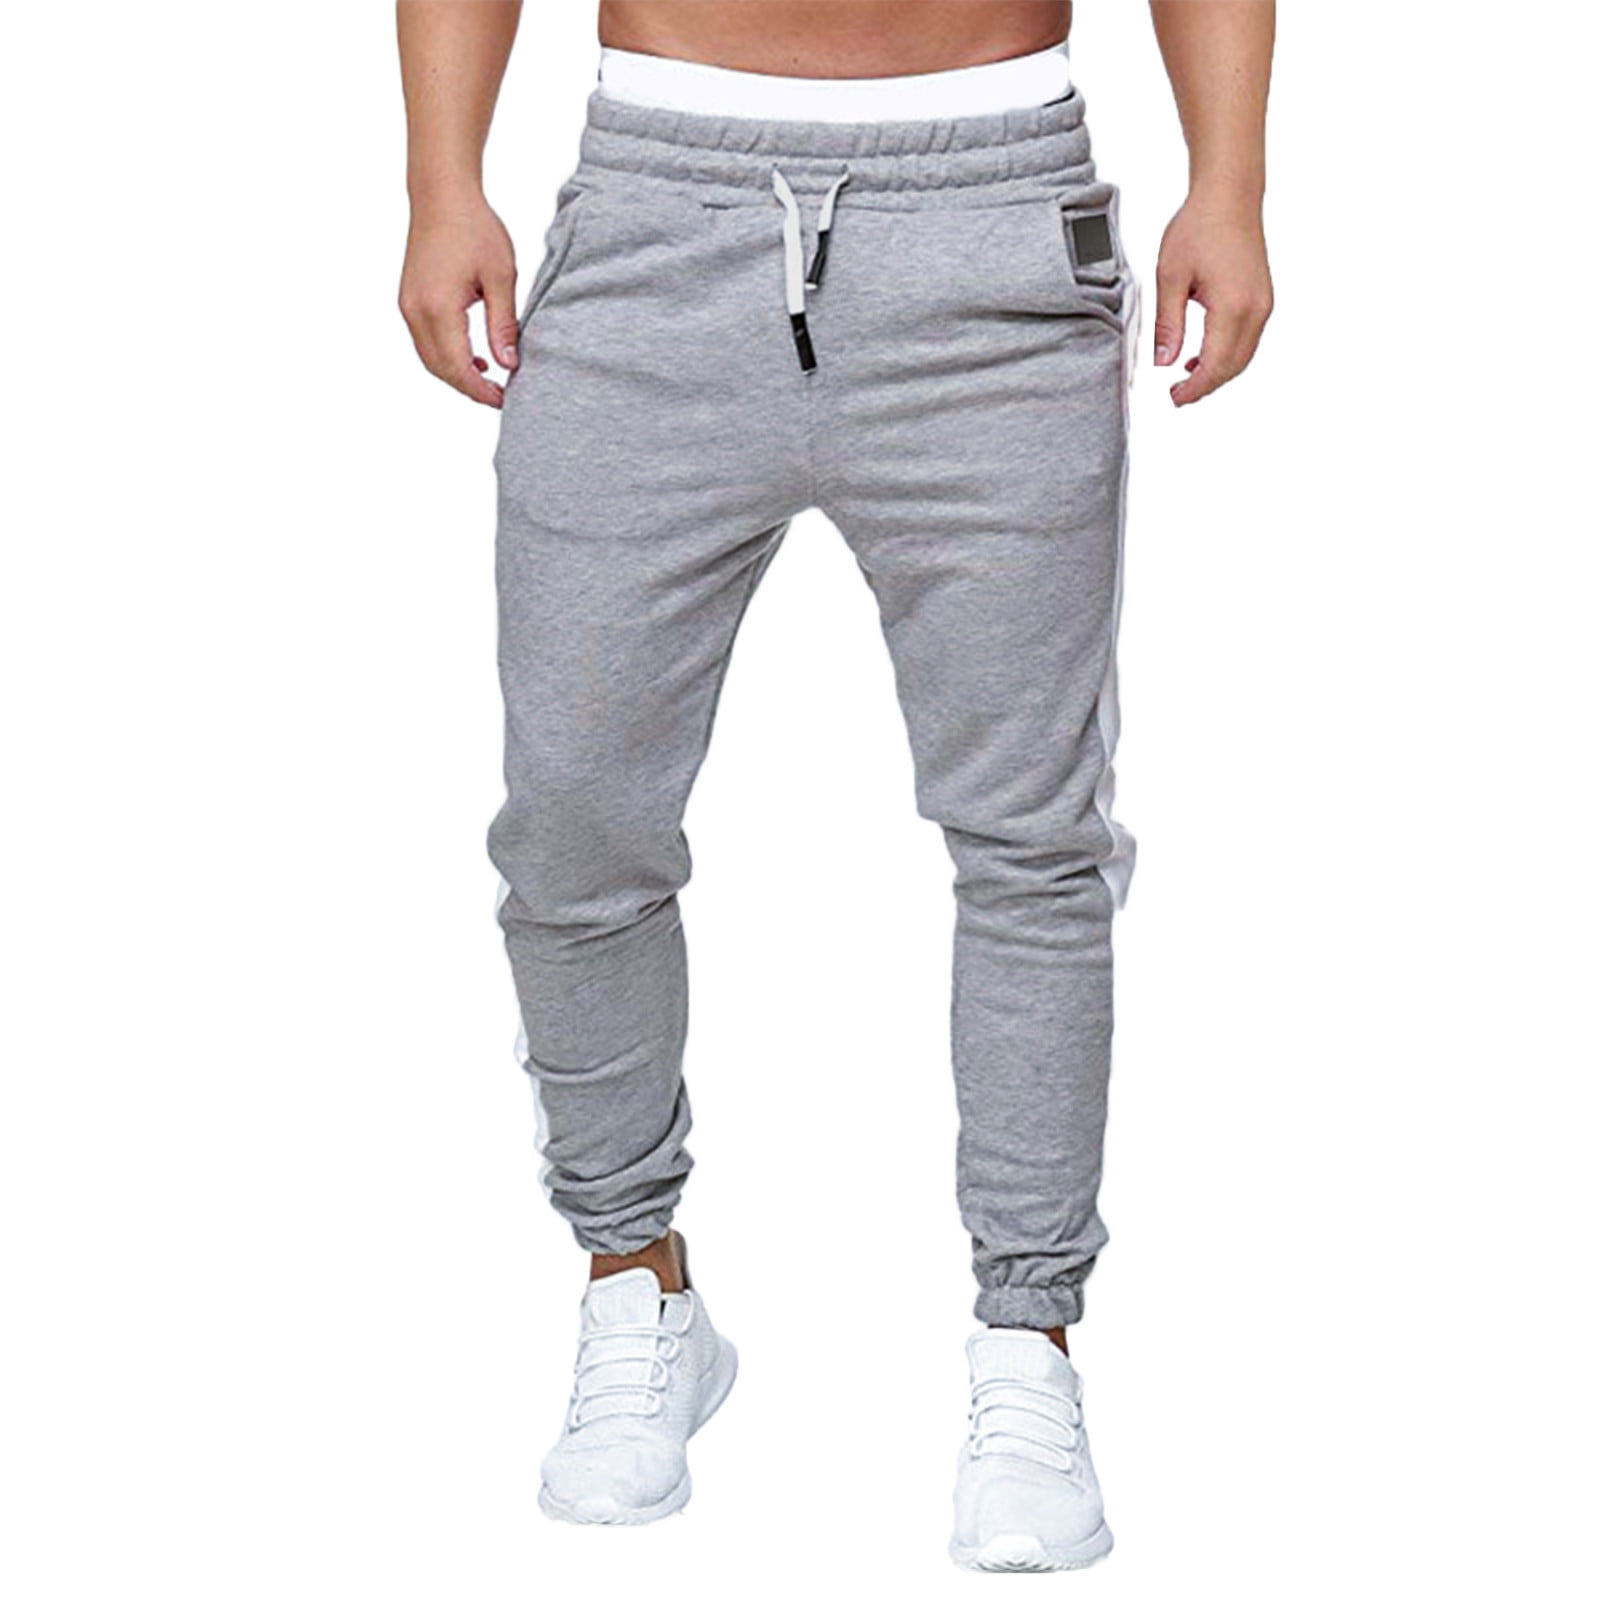 Carhartt Wip Flint Pant Grey - Mens - Casual Pants Carhartt WIP